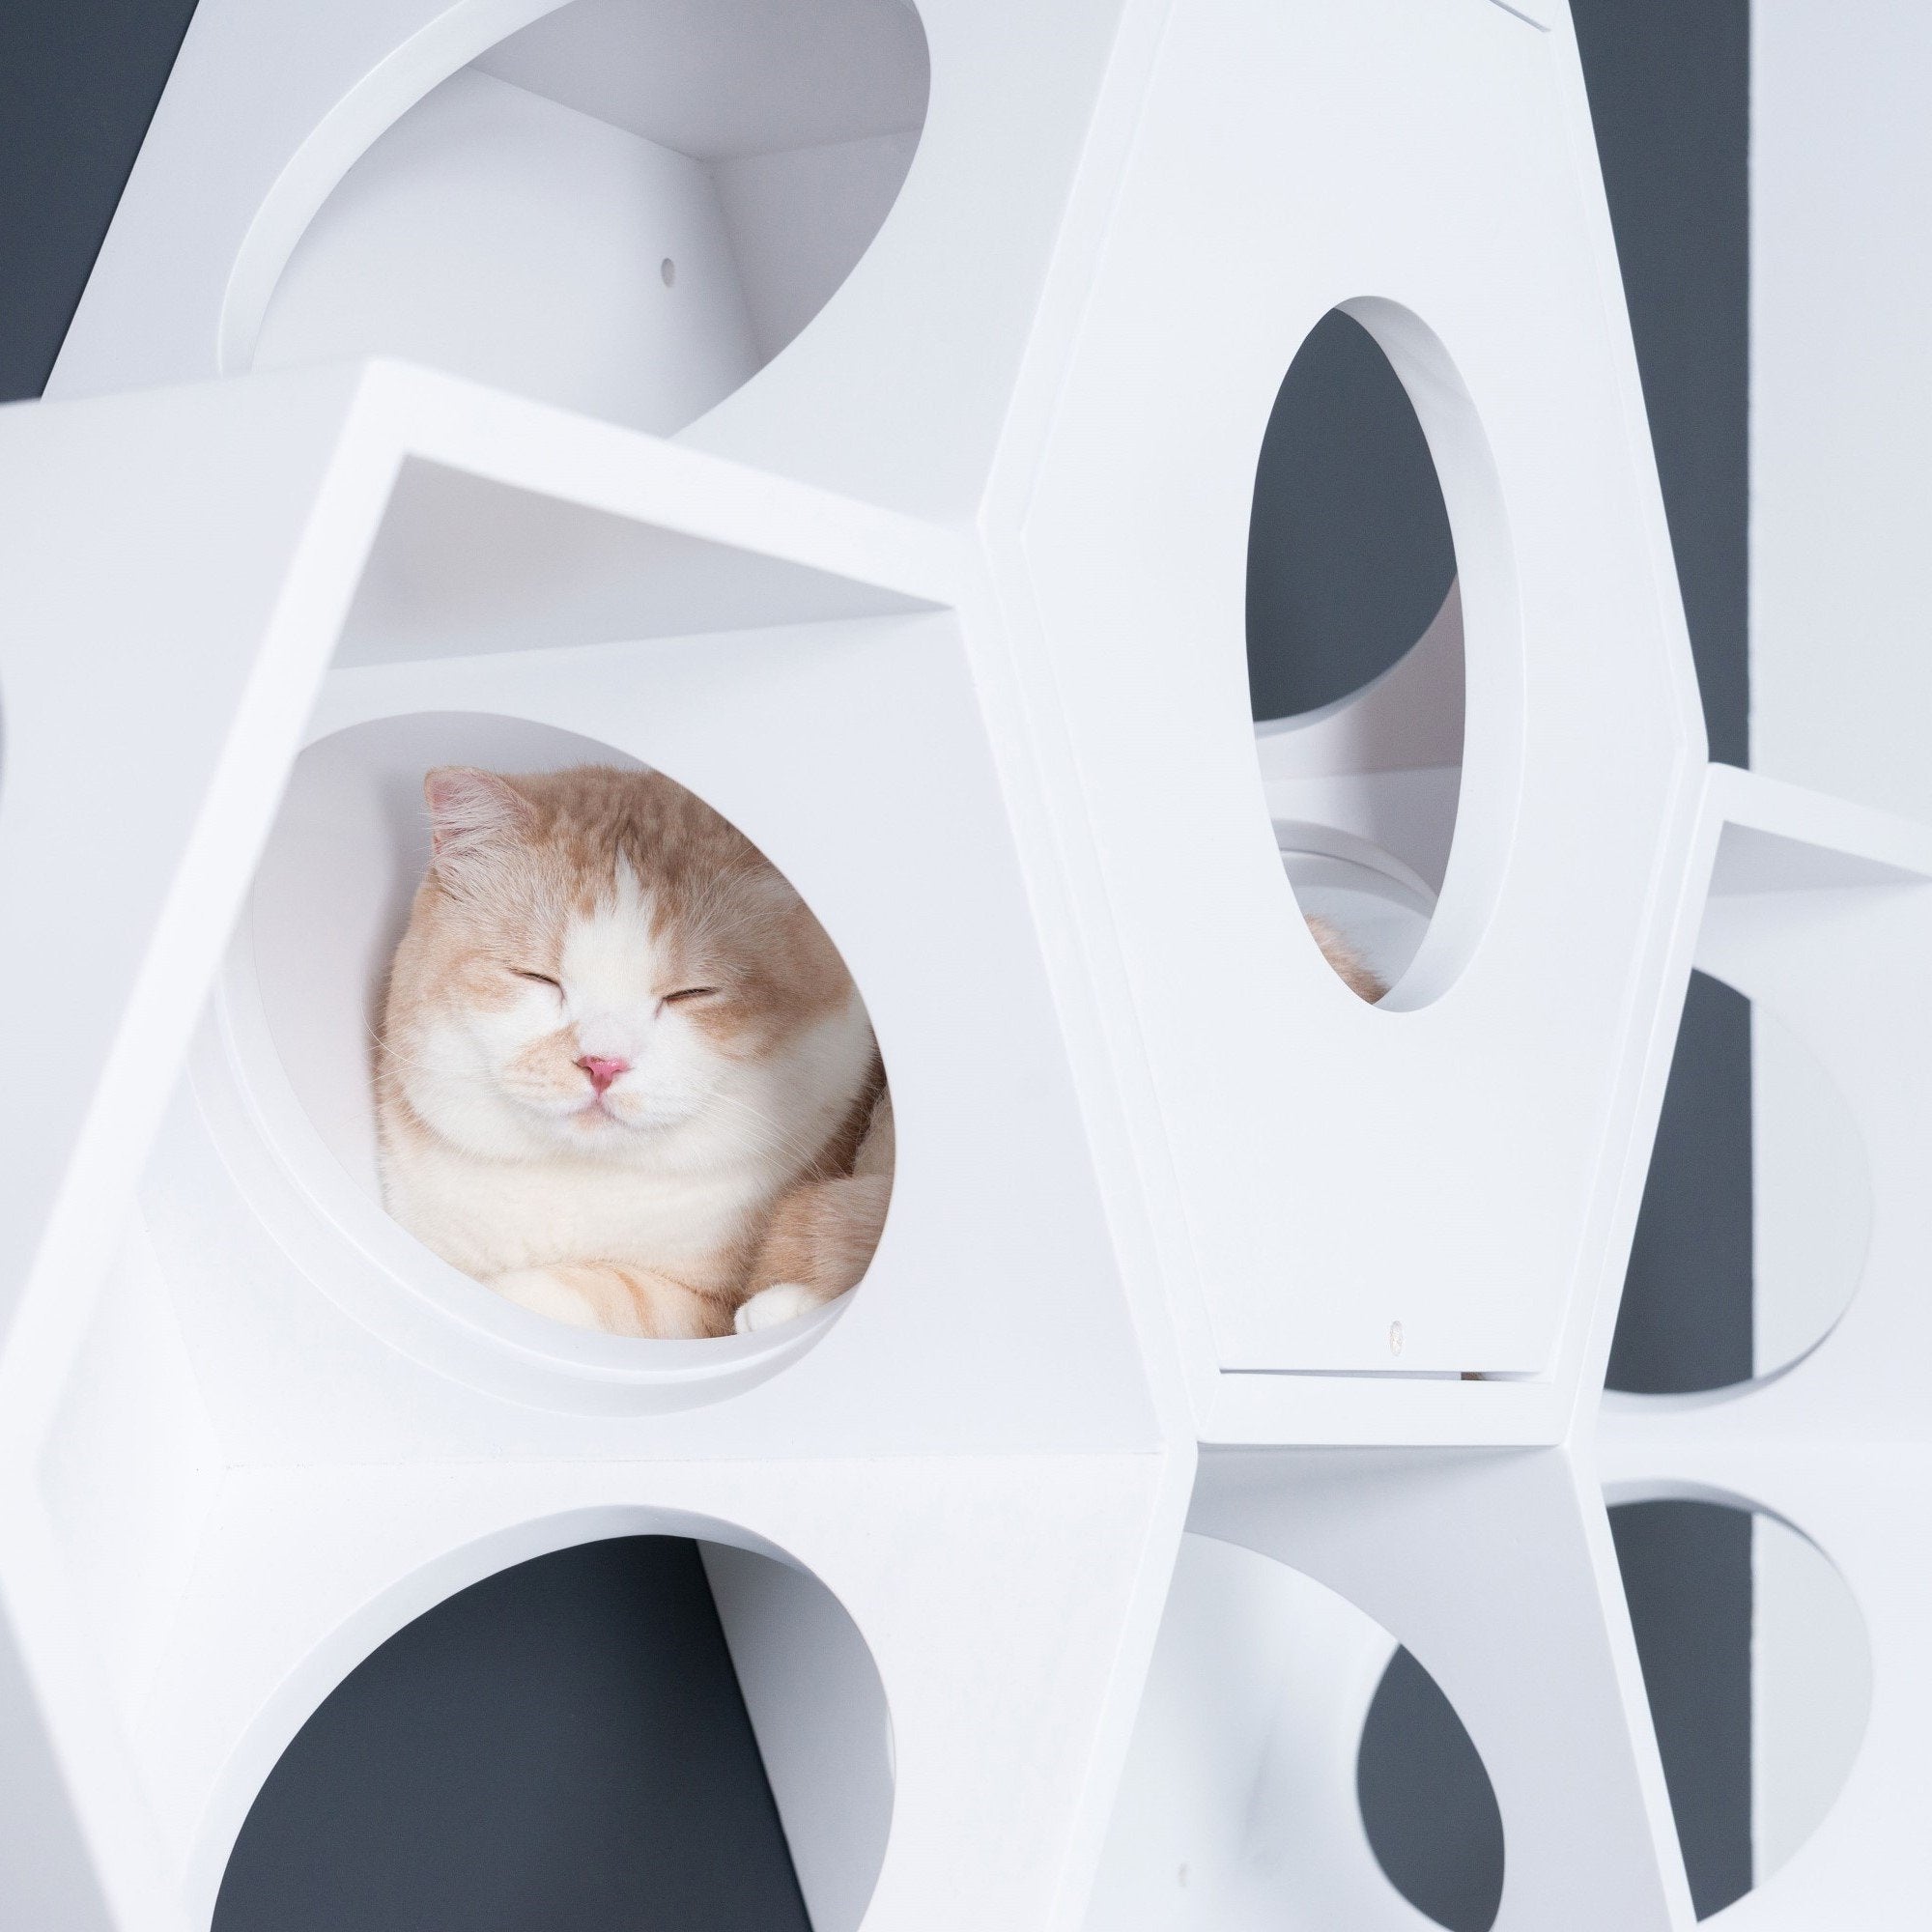 パイン無垢材で作られた壁掛けタイプのキャットタワー。ホワイトの六角形で四面に穴を開けているので、猫は好きな場所から出入りができます。複数繋げることにより、トンネルのようなキャッ